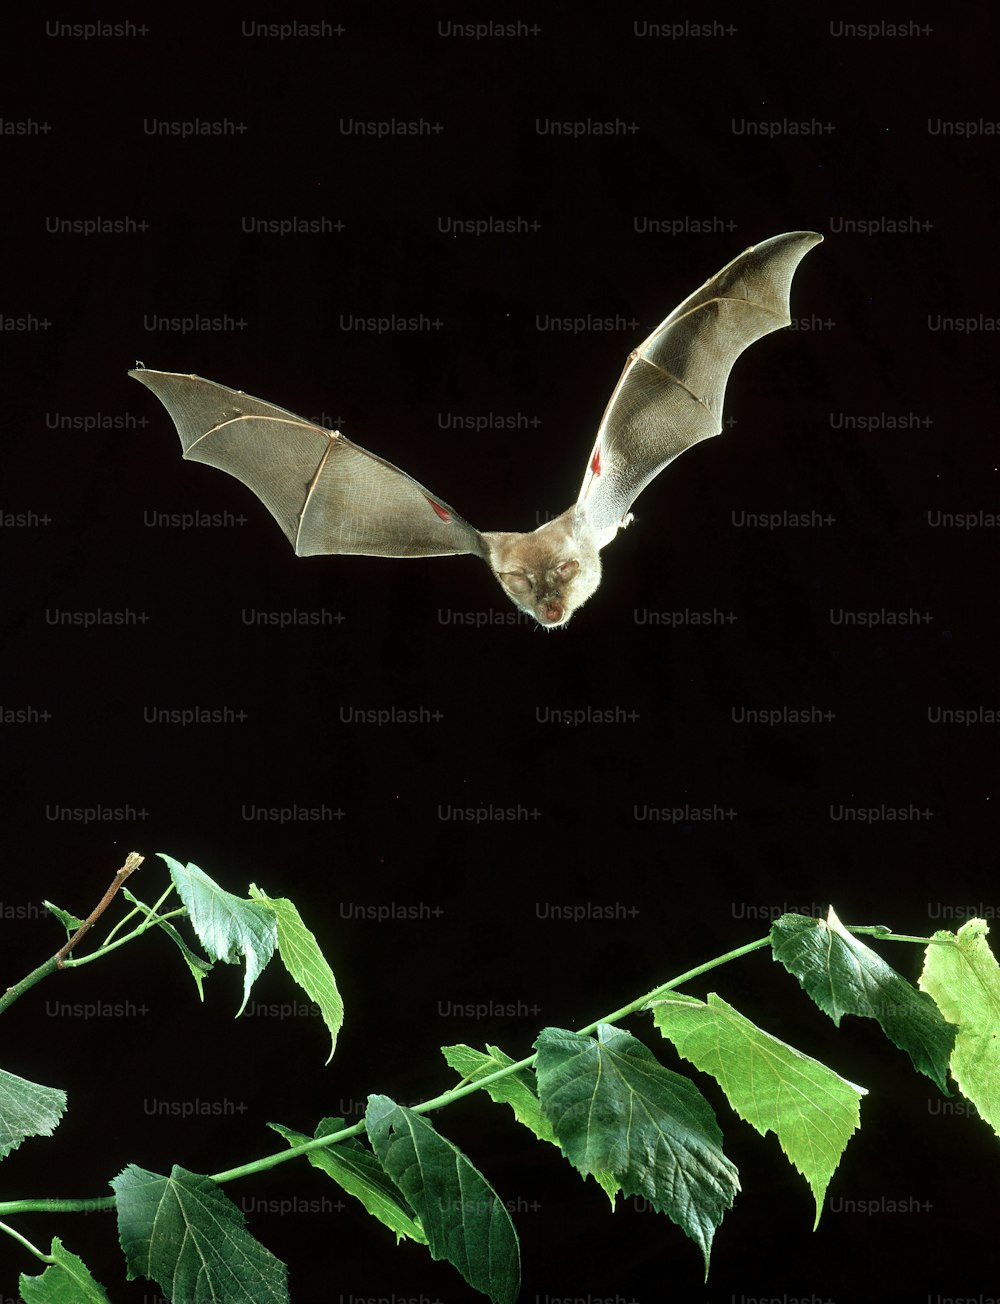 Un pipistrello sta volando sopra una pianta frondosa